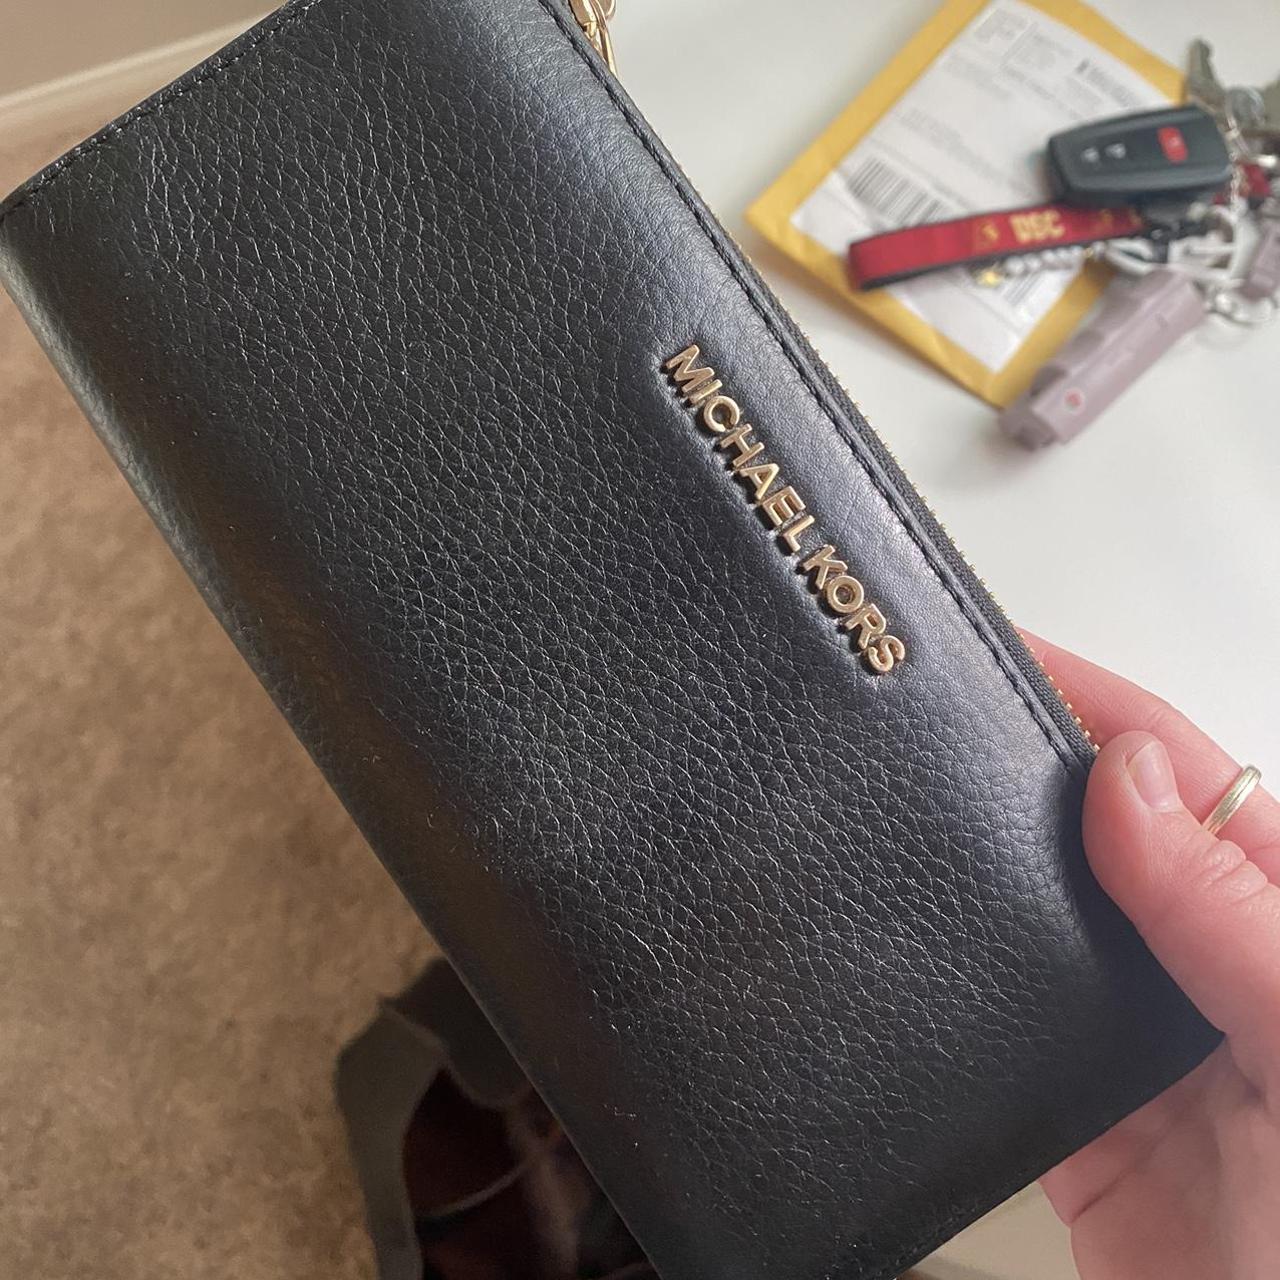 Michael Kors, Bags, Gently Used Black Michael Kors Wallet